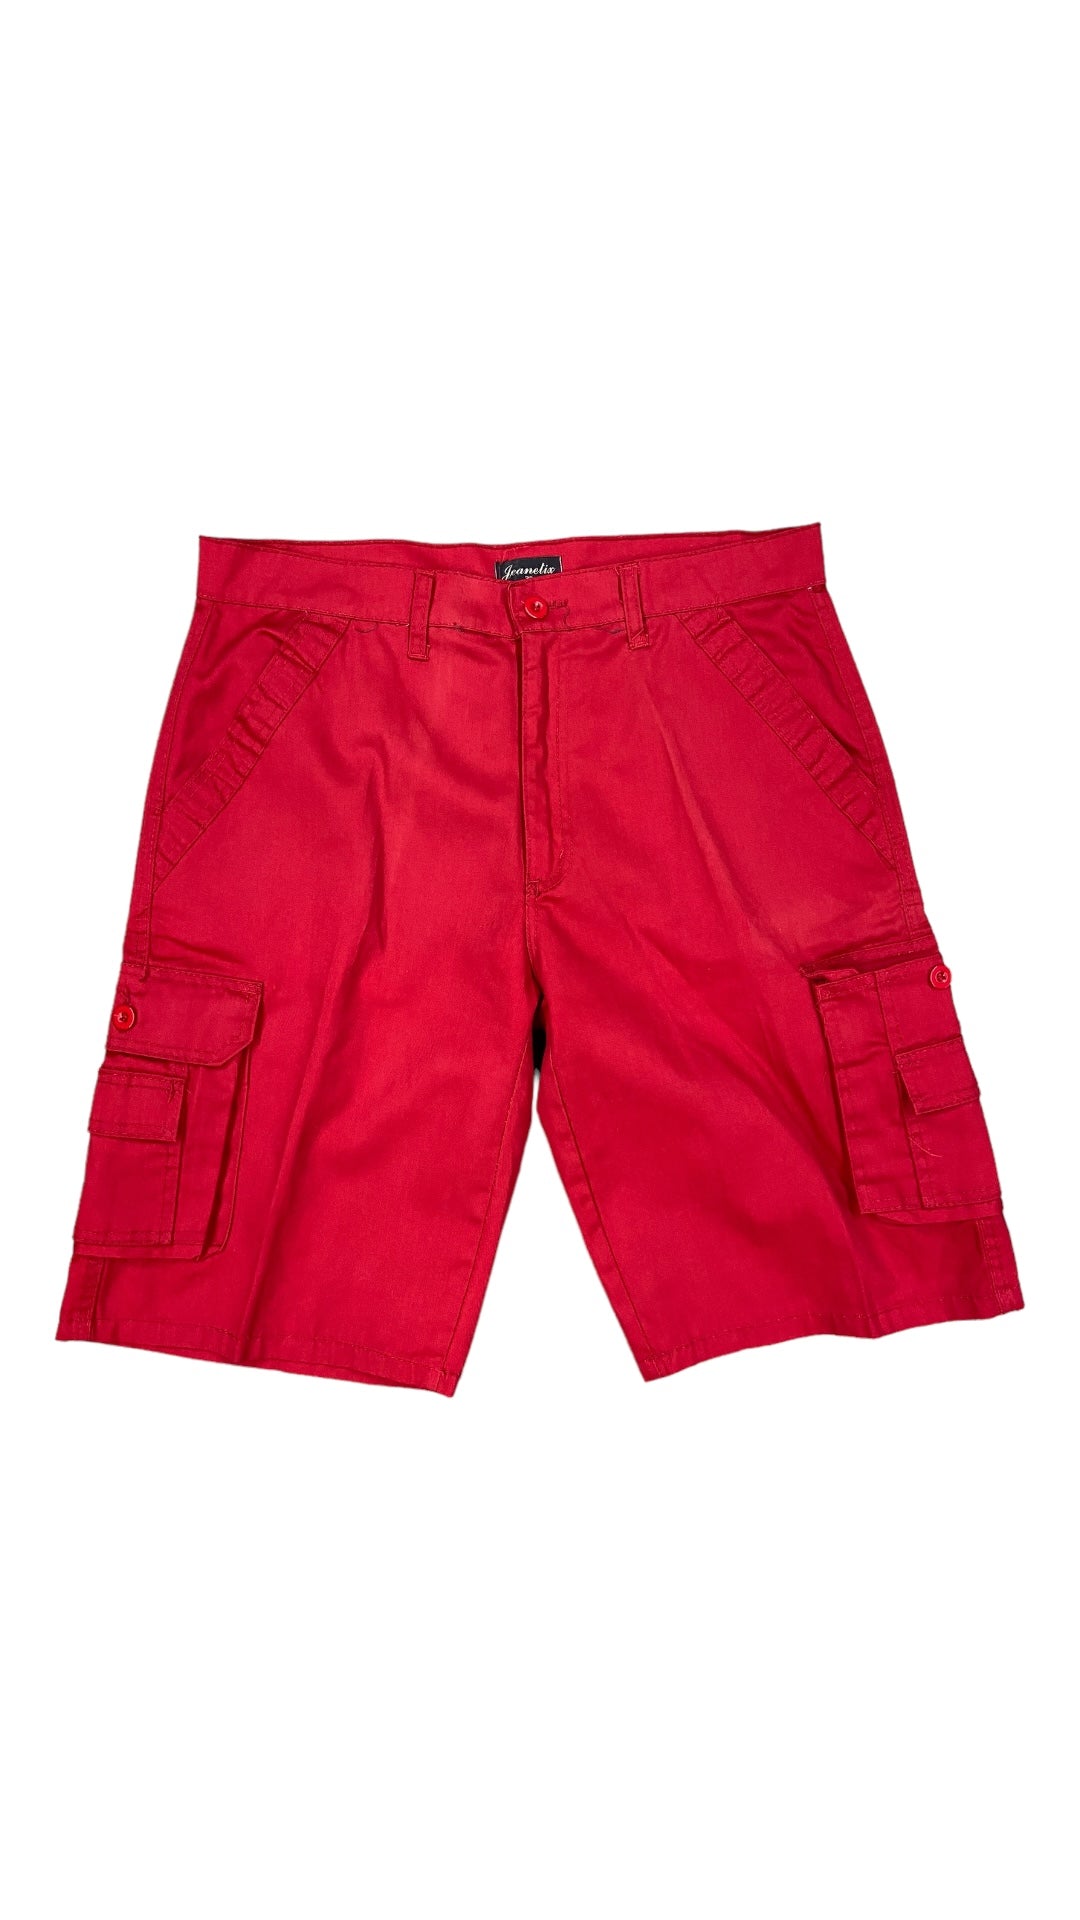 Vtg Jeanetix Red Cargo Shorts Sz 36"